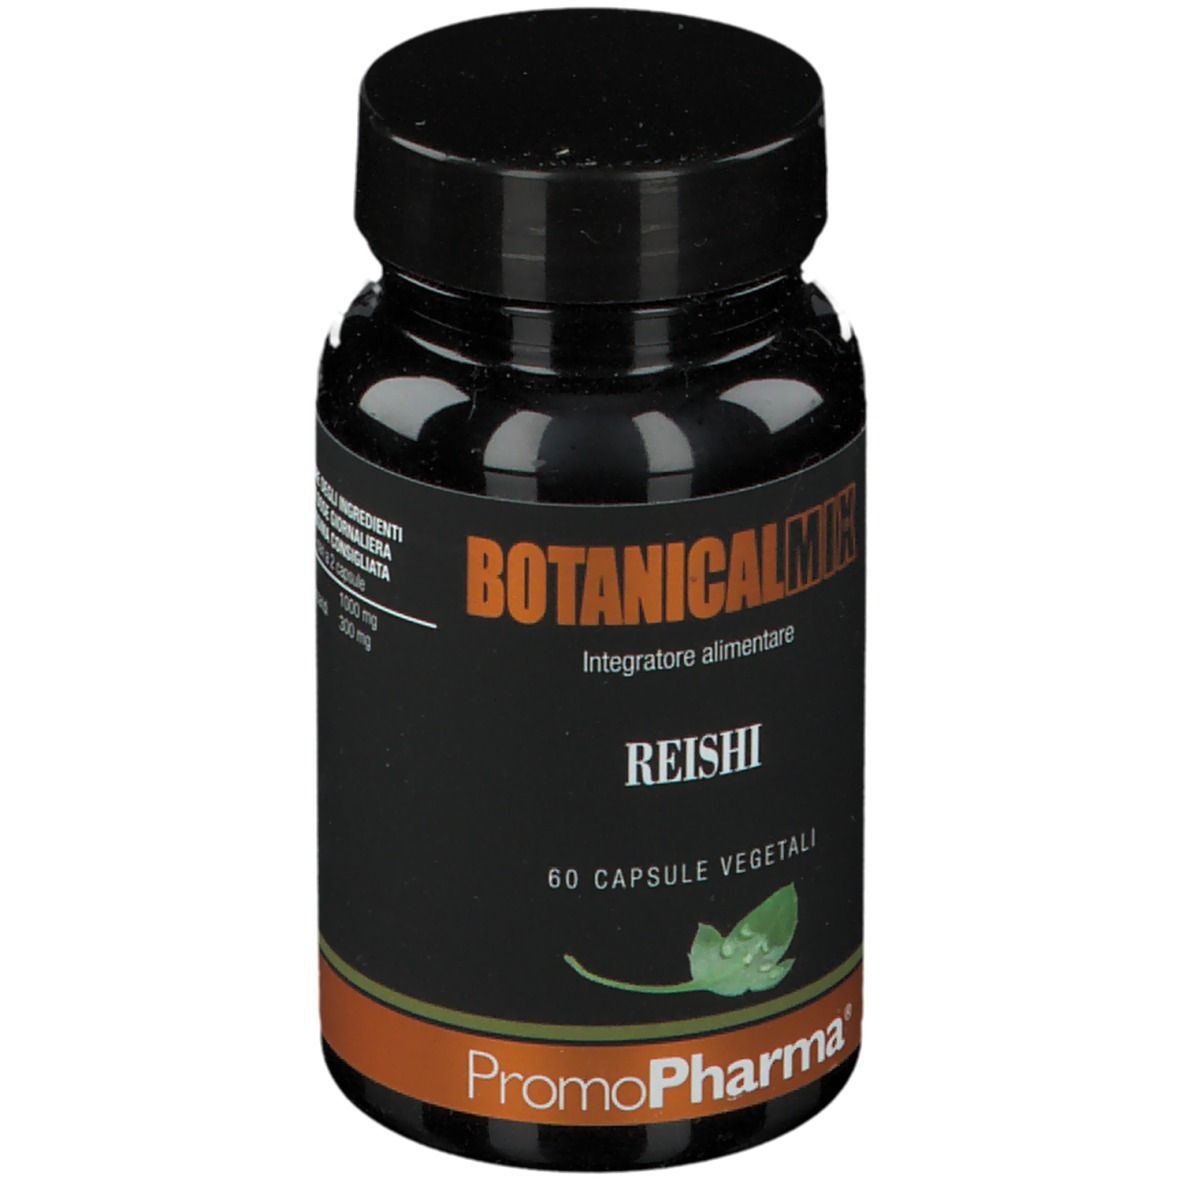 PromoPharma Botanical Mix Reishi